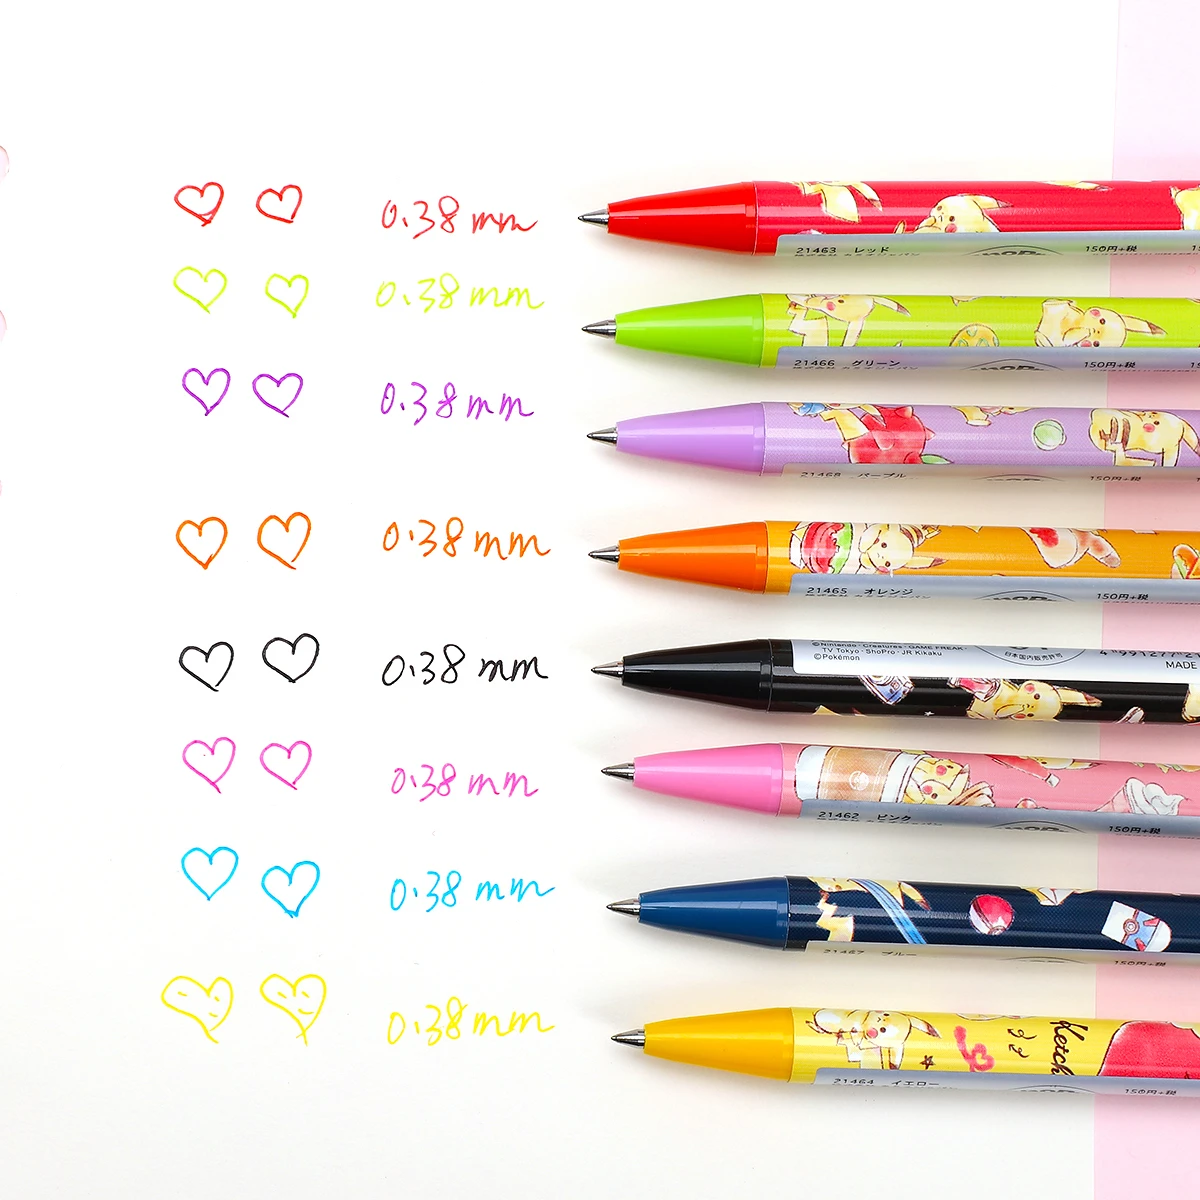 1 шт., 0,38 мм, kamio, японская Милая гелевая ручка в стиле мультфильма, кавайное моделирование, 0,38 мм, нейтральная ручка для письма, школьные принадлежности